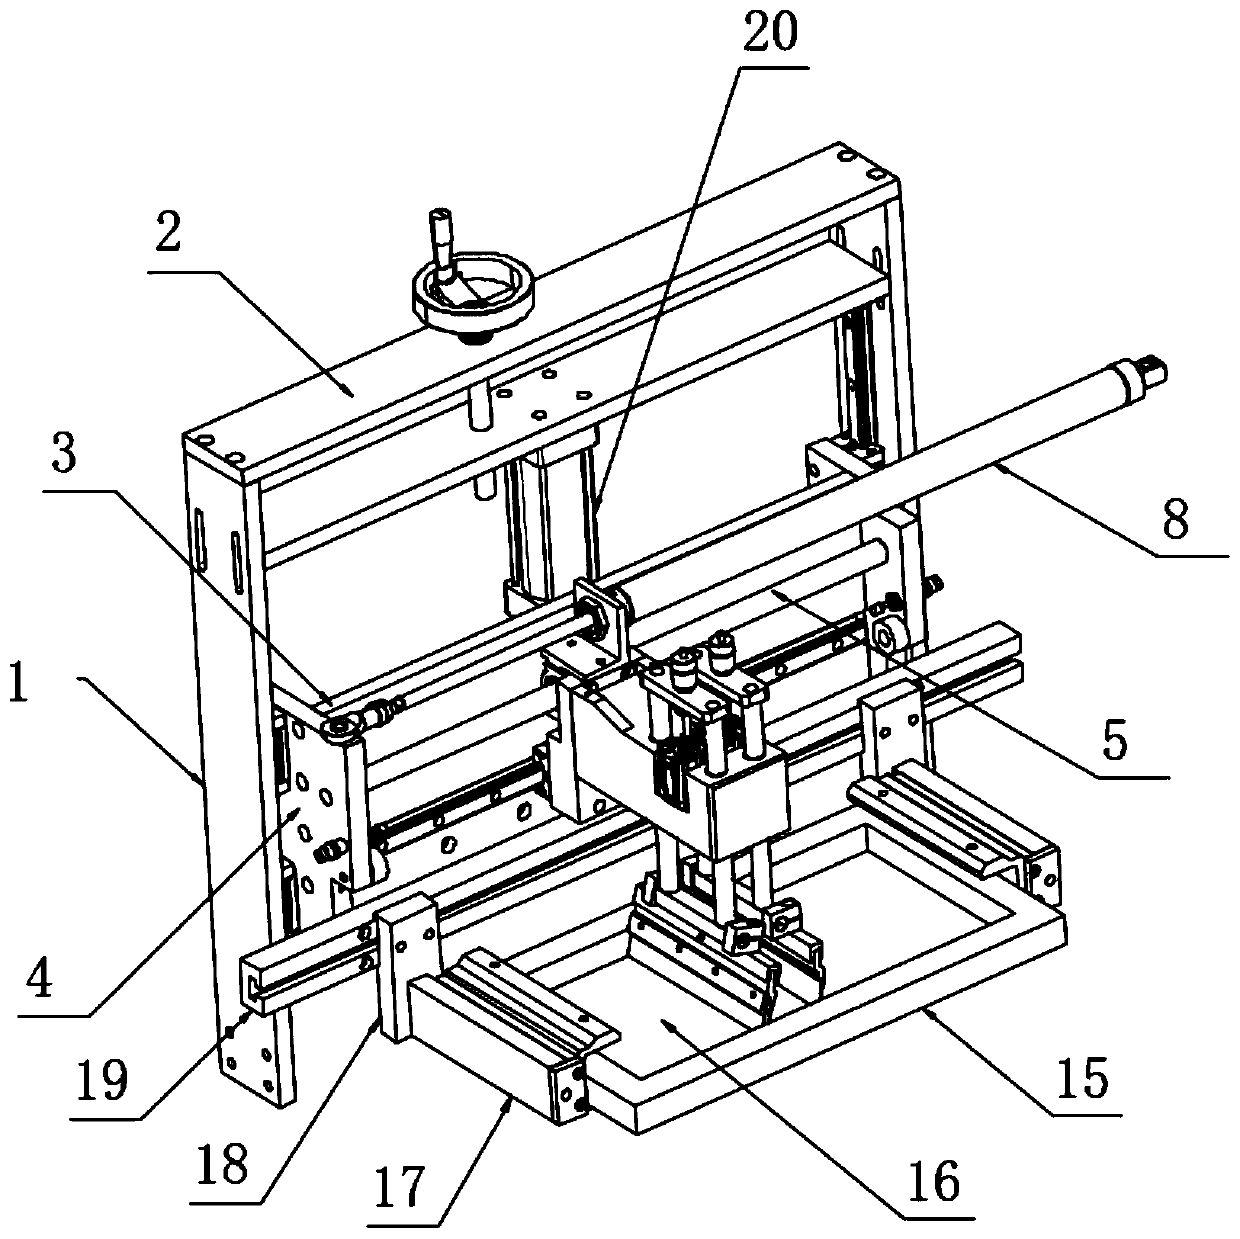 Silk-screen assembling machine